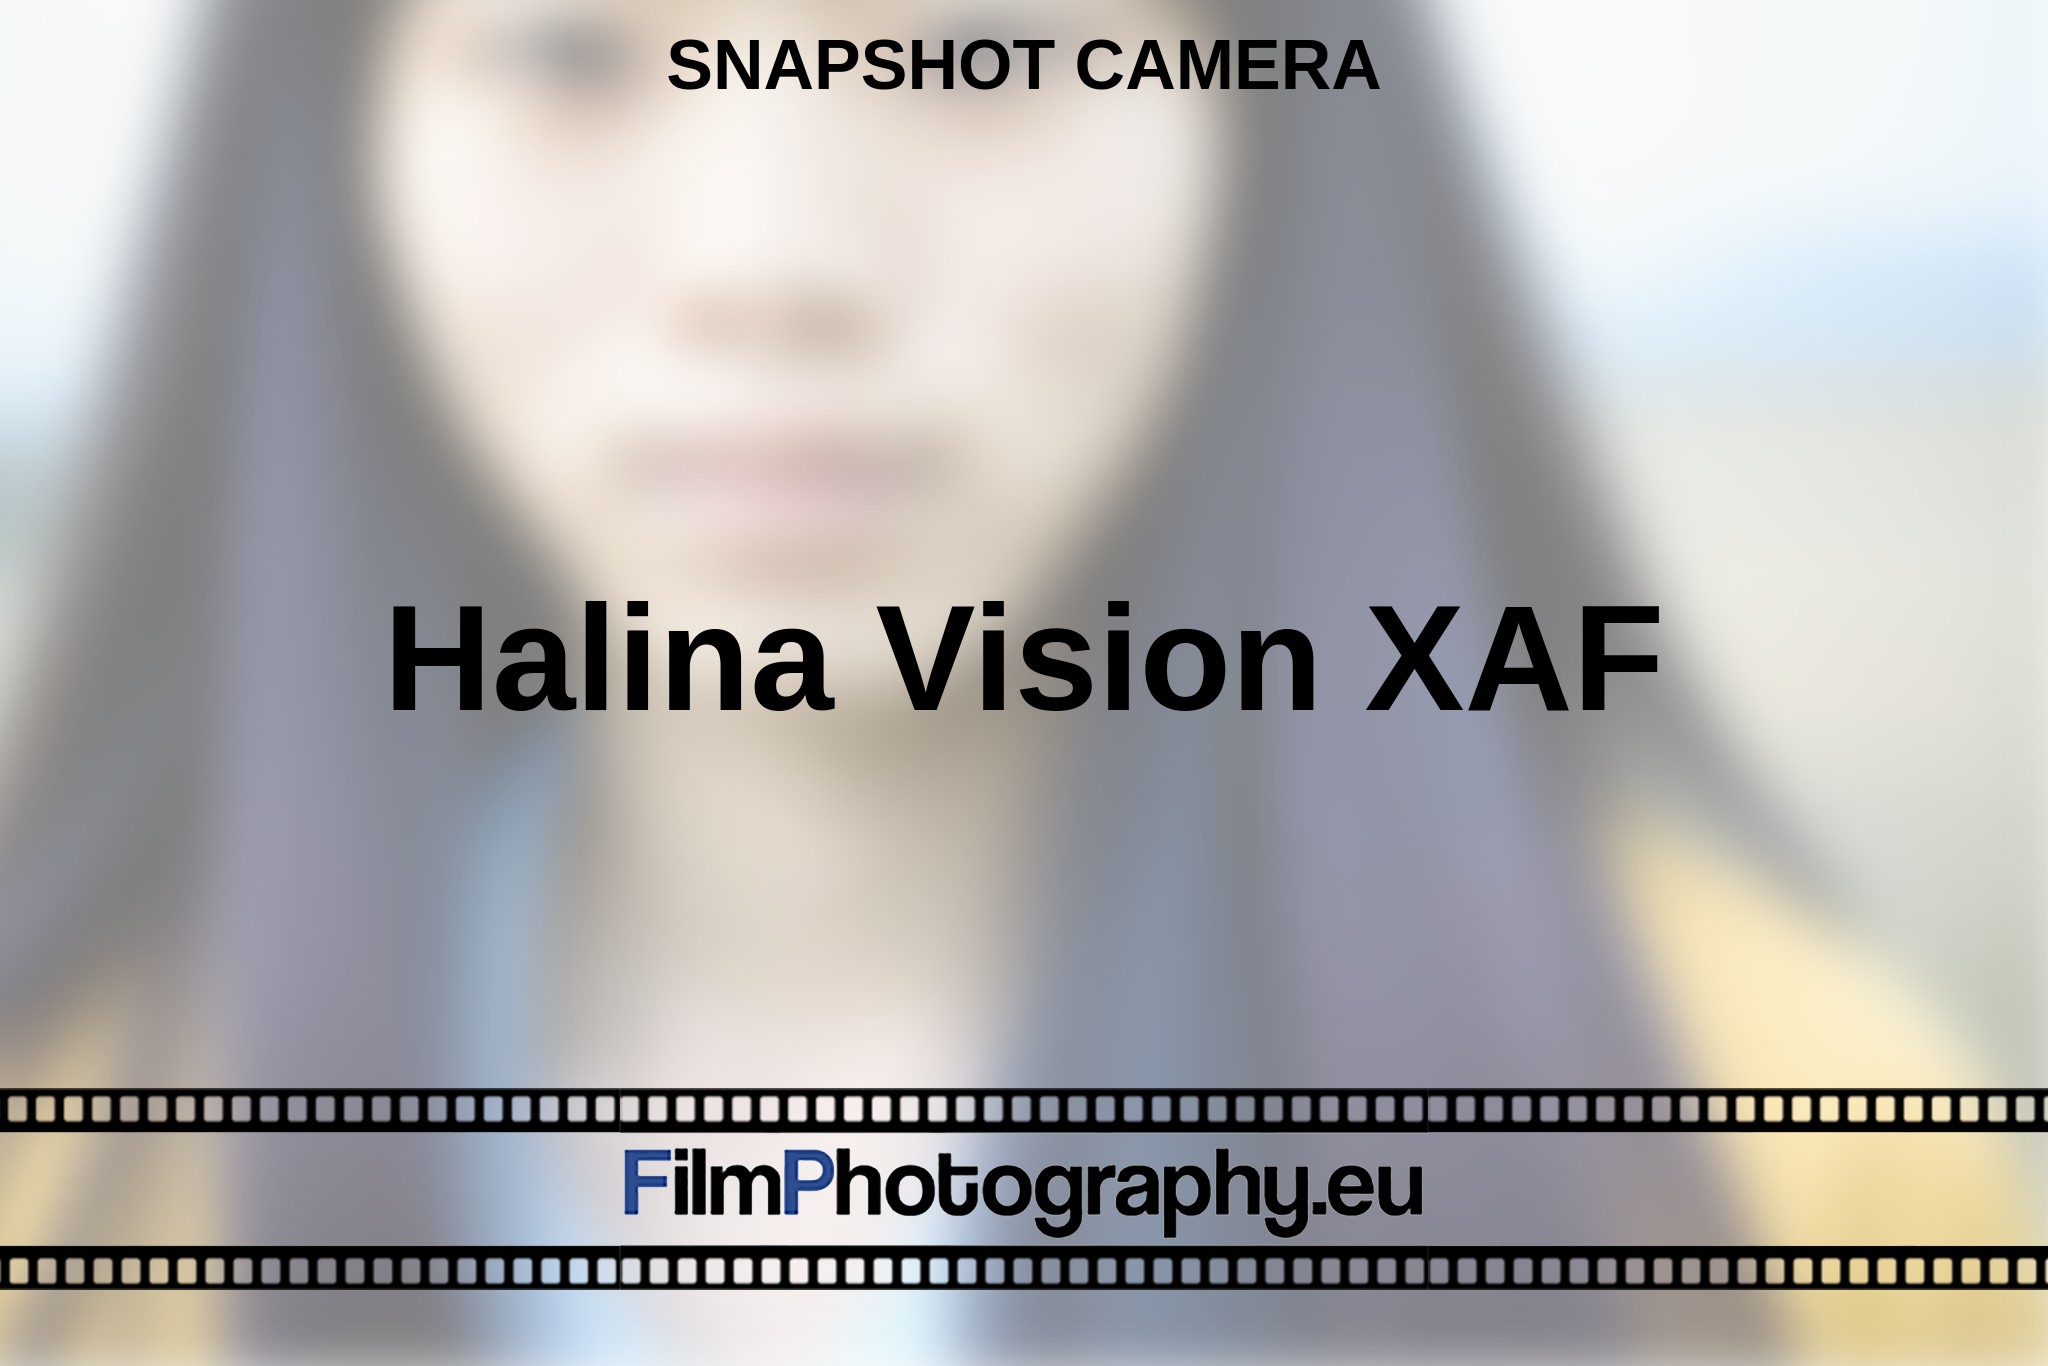 halina-vision-xaf-snapshot-camera-en-bnv.jpg